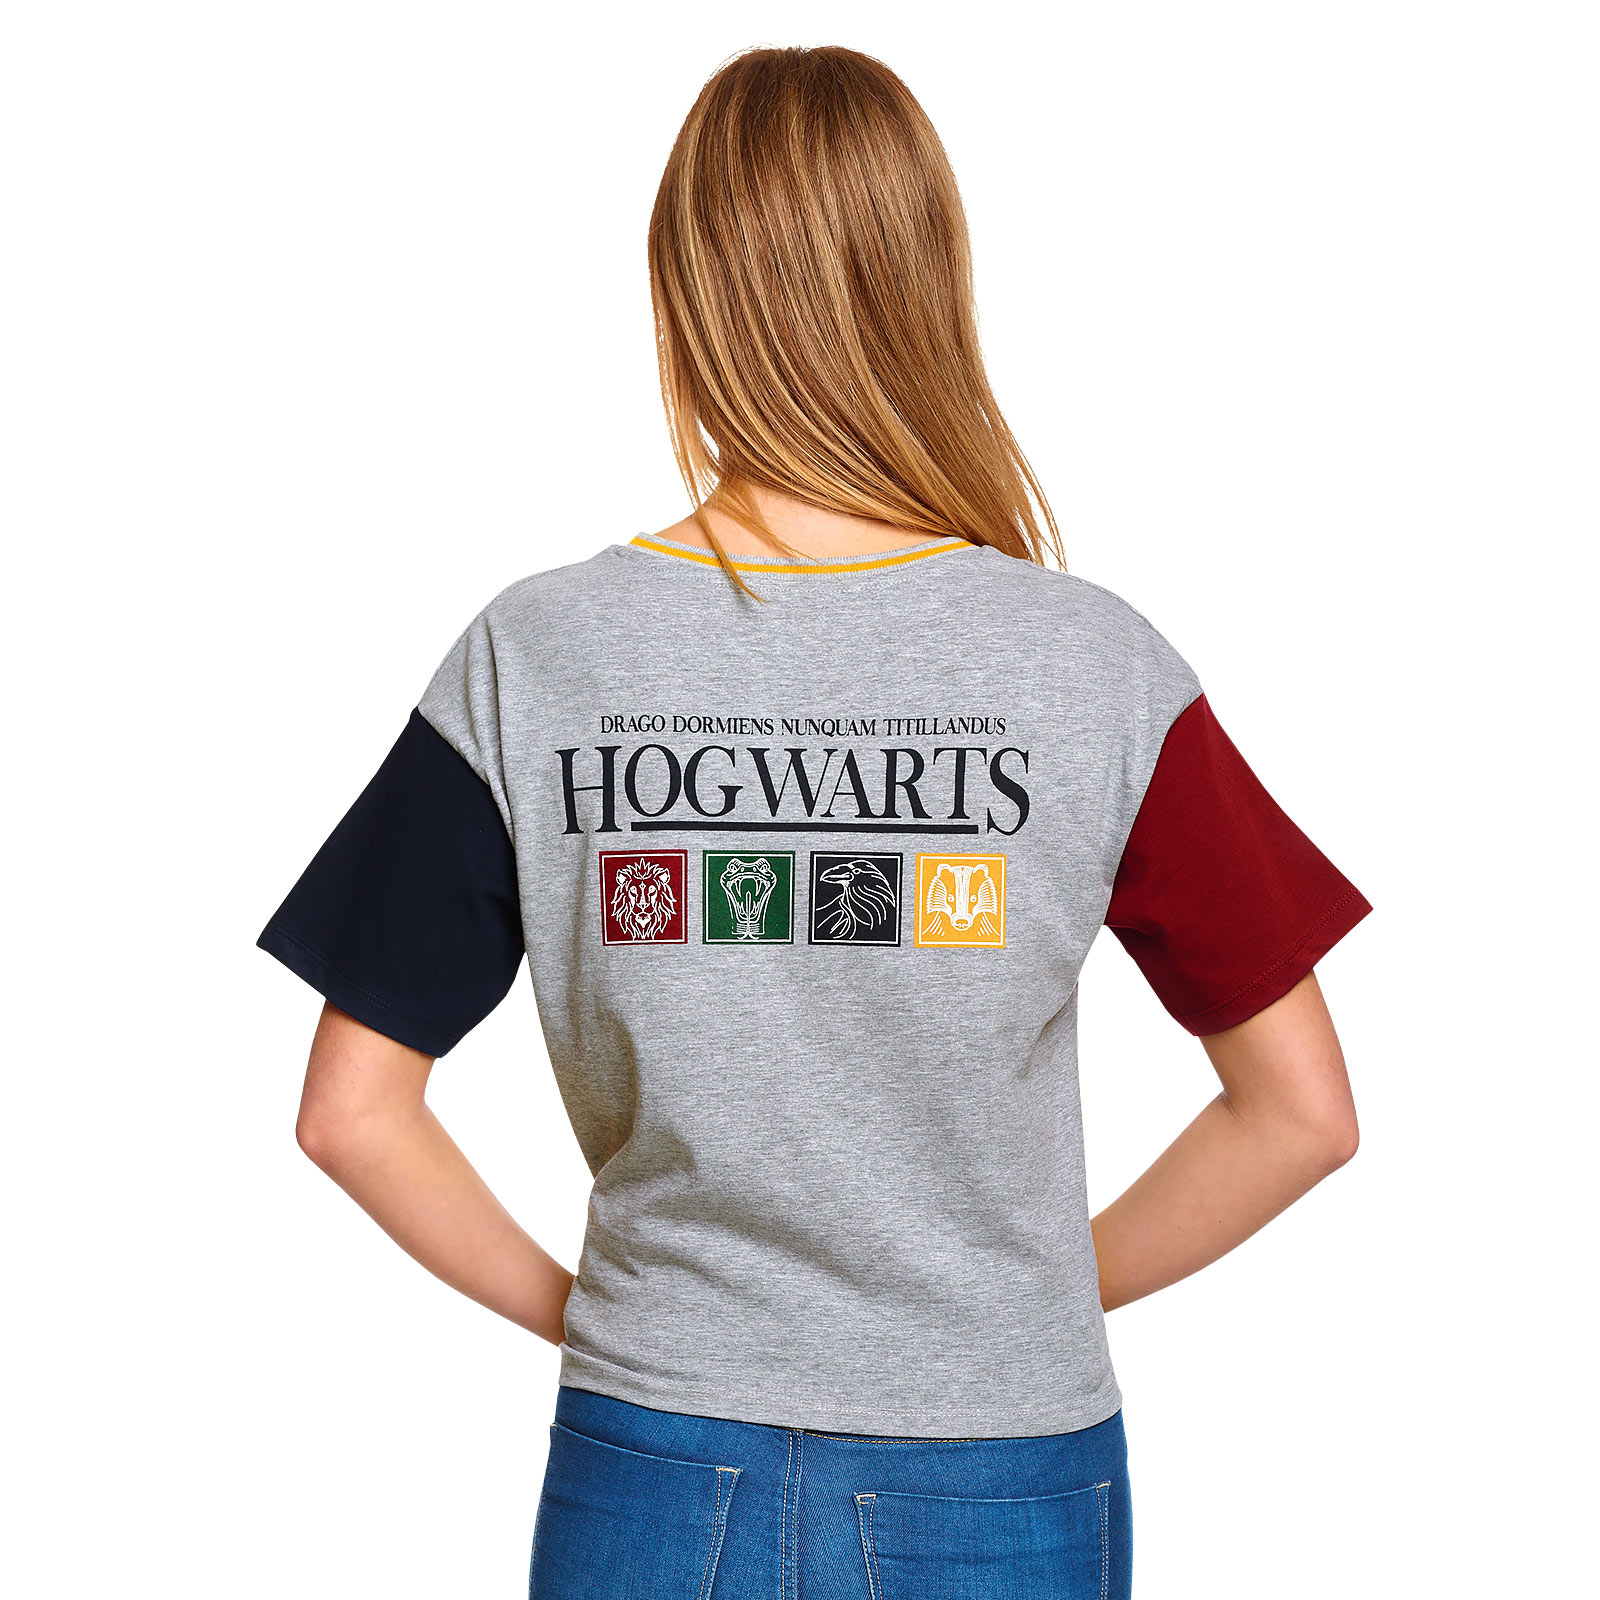 Harry Potter - Hogwarts Crop Top Women's Grey